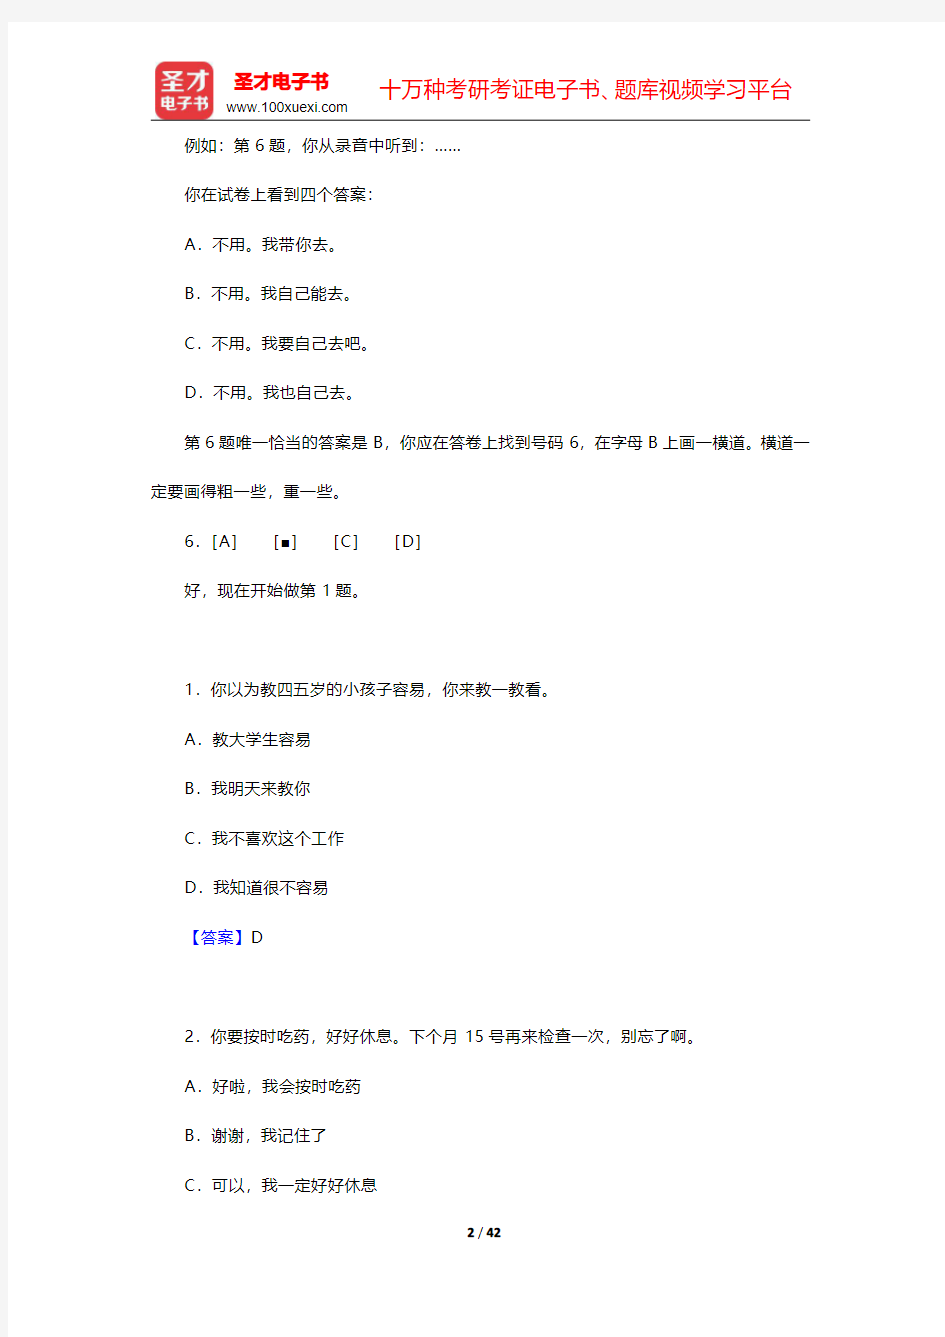 中国少数民族汉语水平等级考试MHK(二级)真题样题及答案【圣才出品】